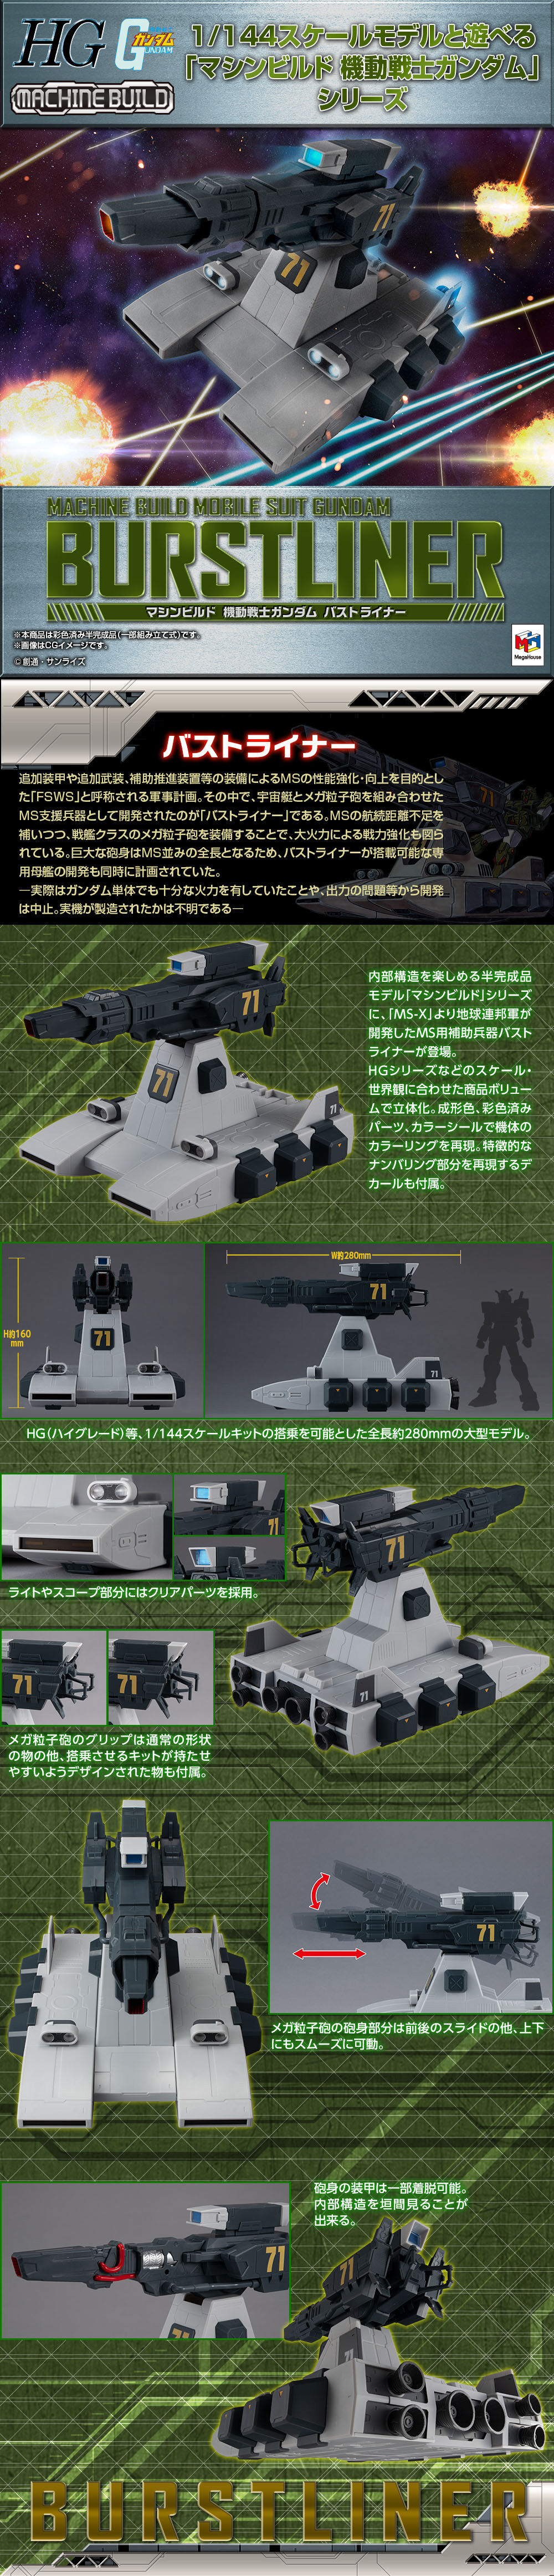 Megahobby Mechine Build 1/144 Burst Liner for Mobile Suit Gundam series